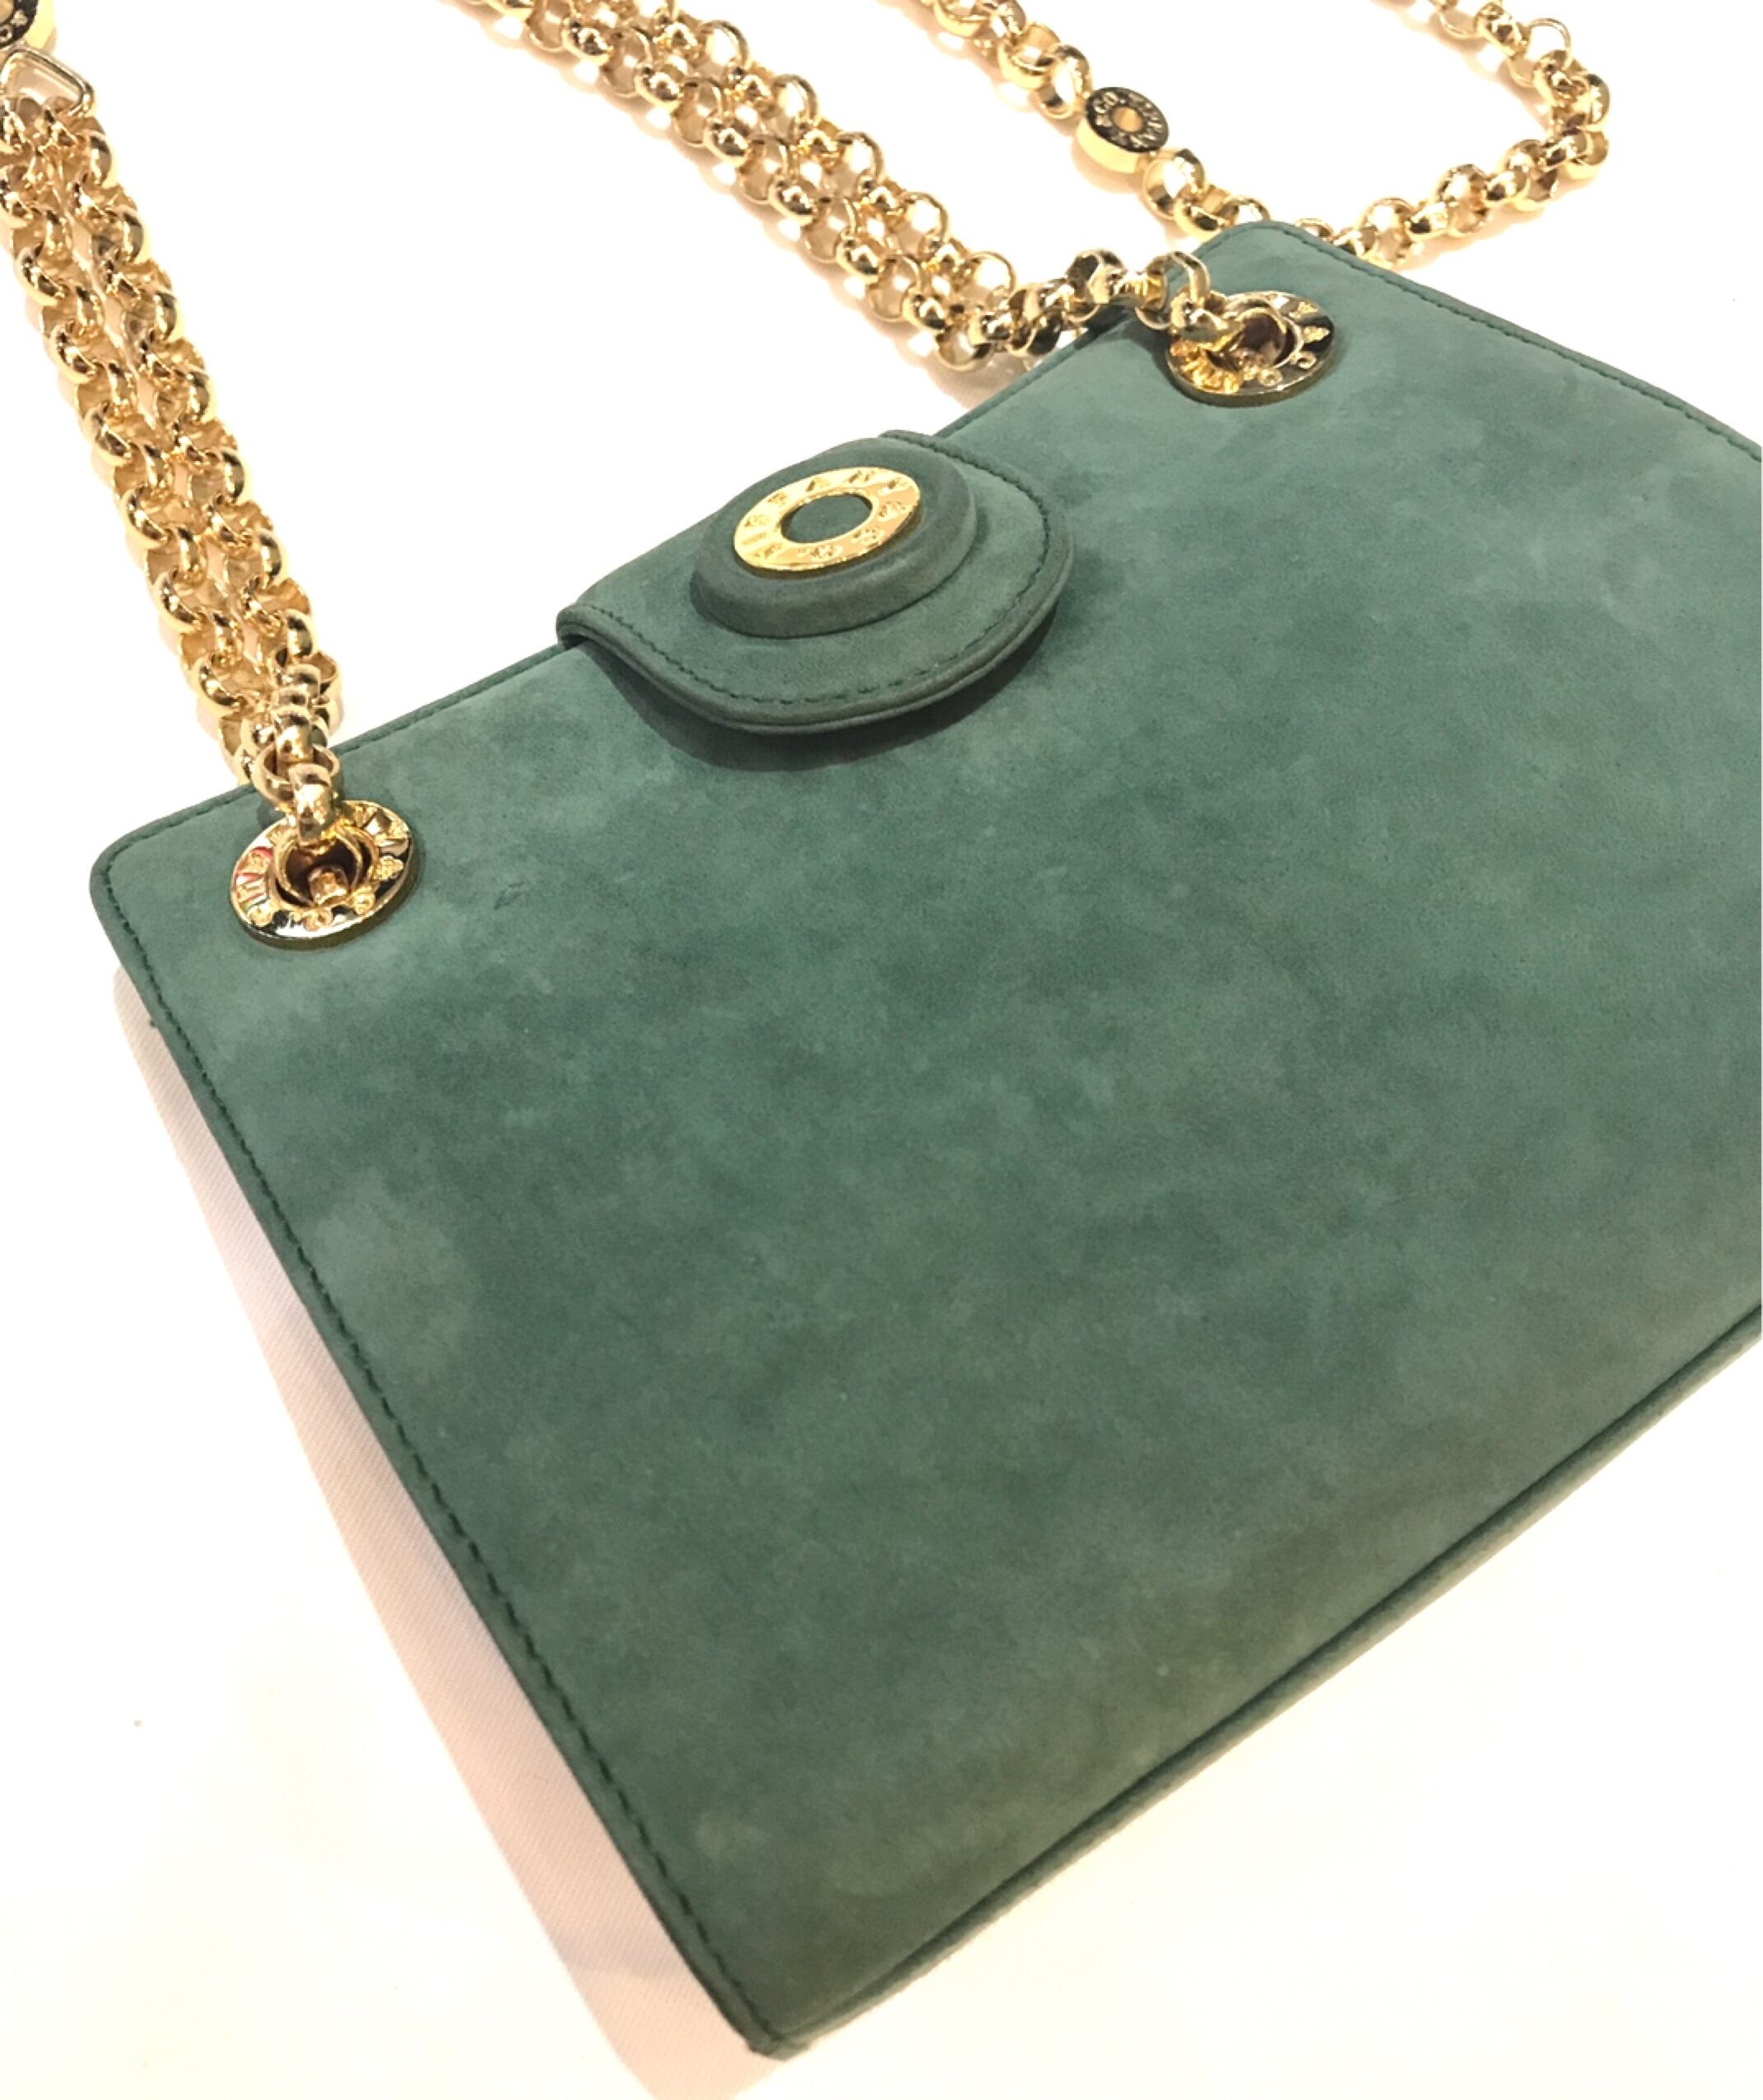 オフィス【保存袋と箱付】Tiffany グリーン 緑 ゴールドチェーンバッグ 春